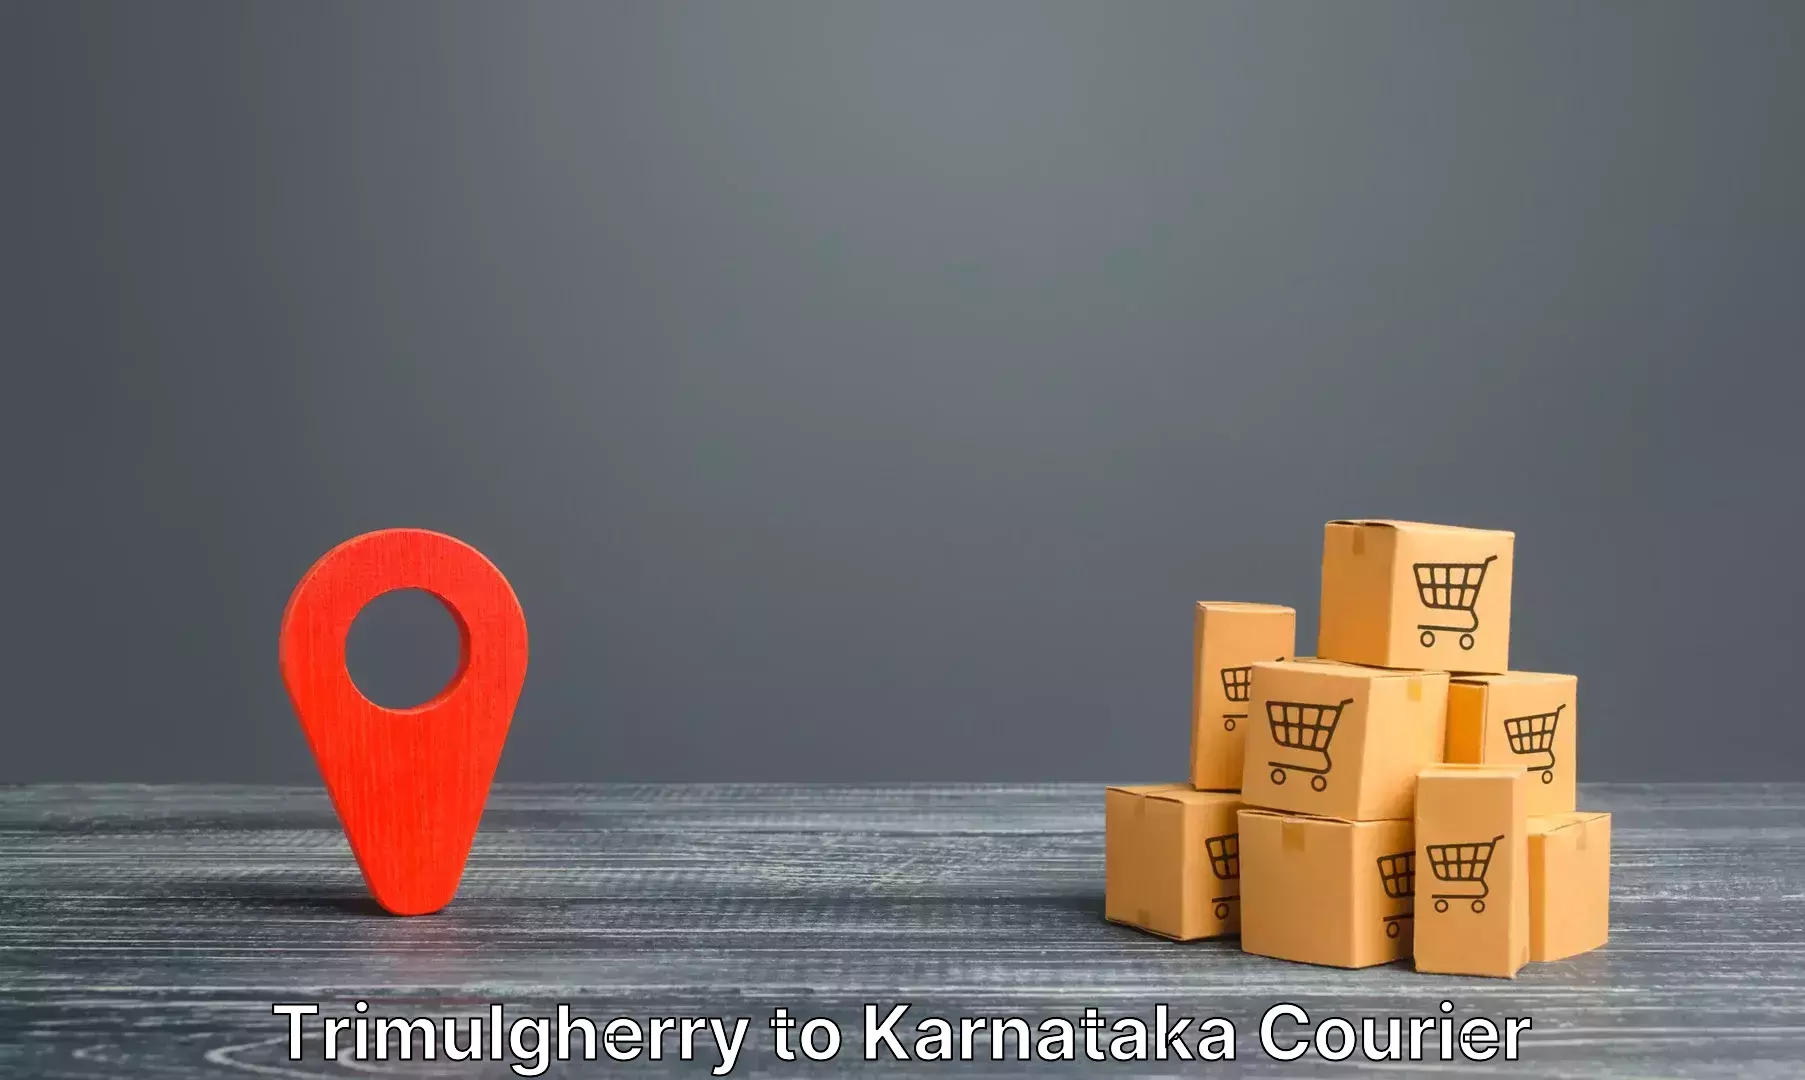 Hassle-free luggage shipping Trimulgherry to Karnataka